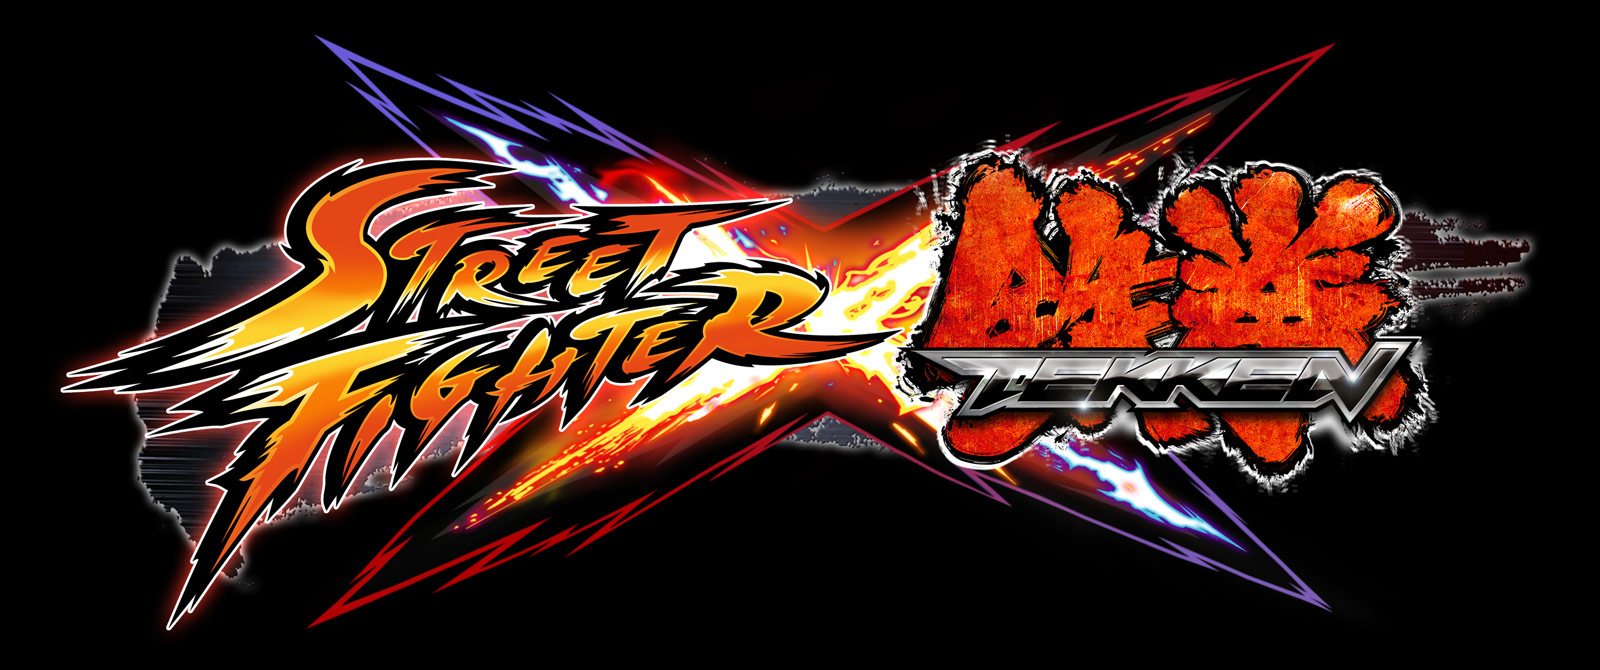 Images of Street Fighter X Tekken | 1600x670